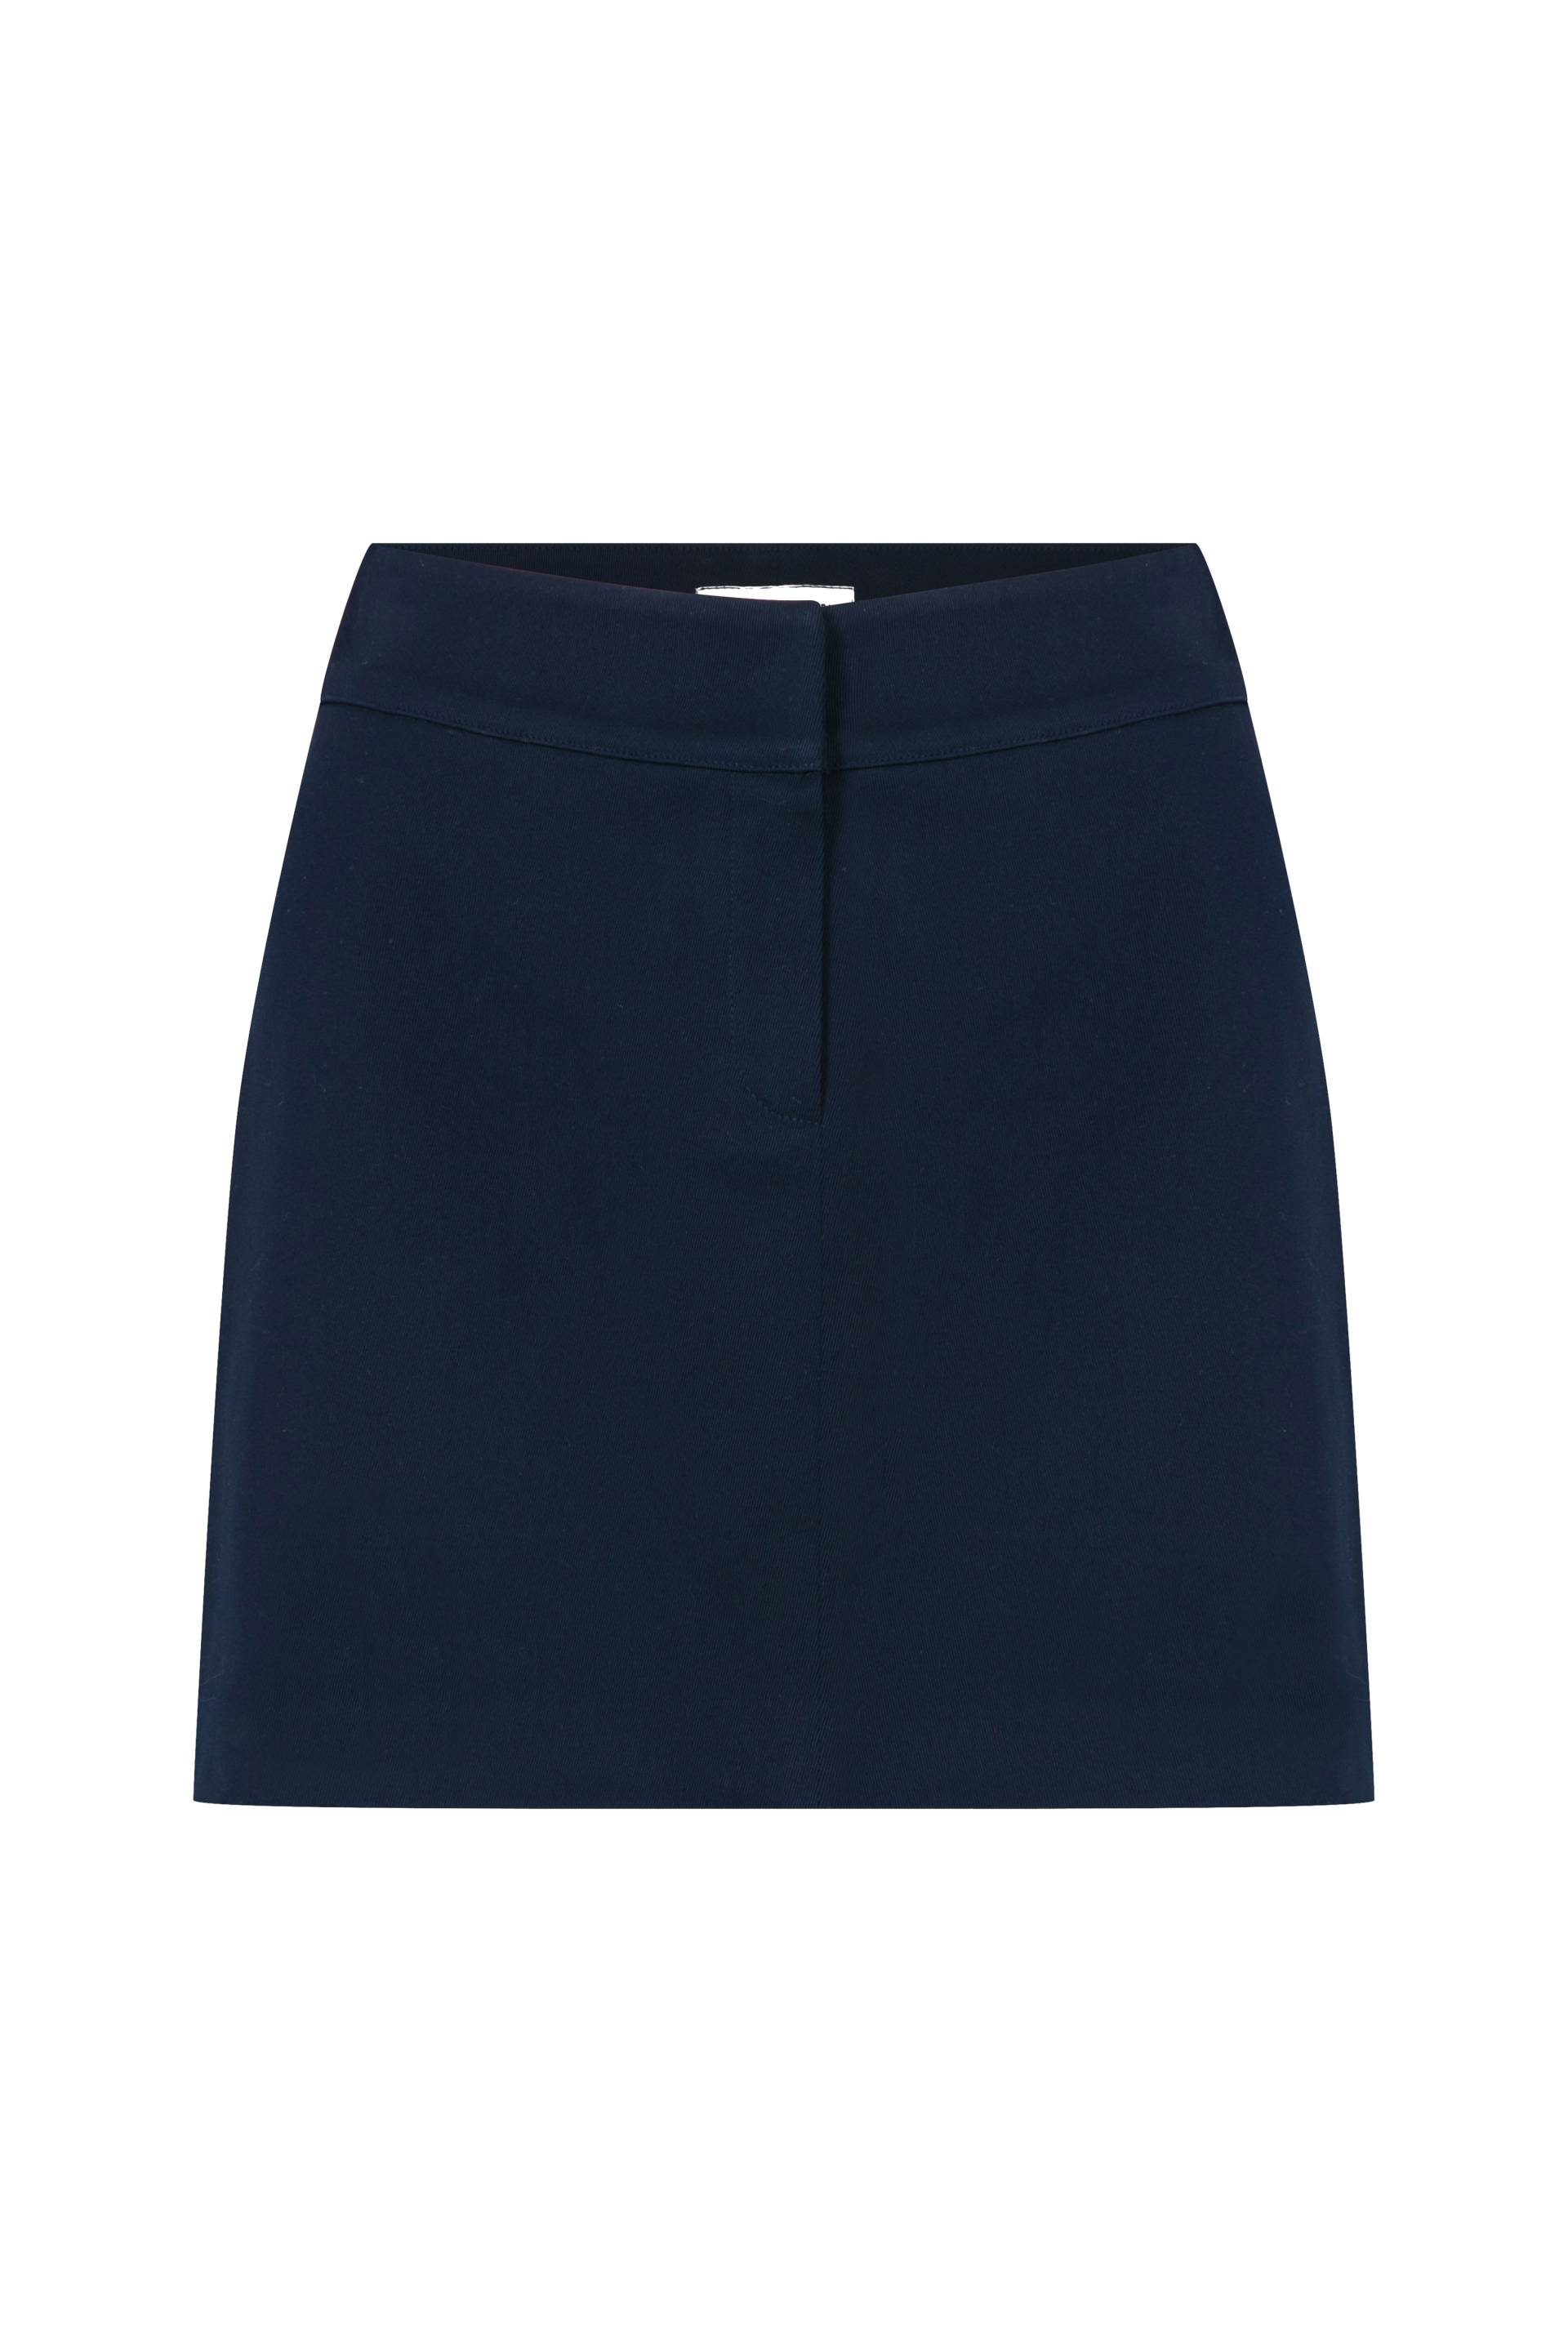 Marde Cotton Mini Skirt in Deep Cobalt von Nazli Ceren